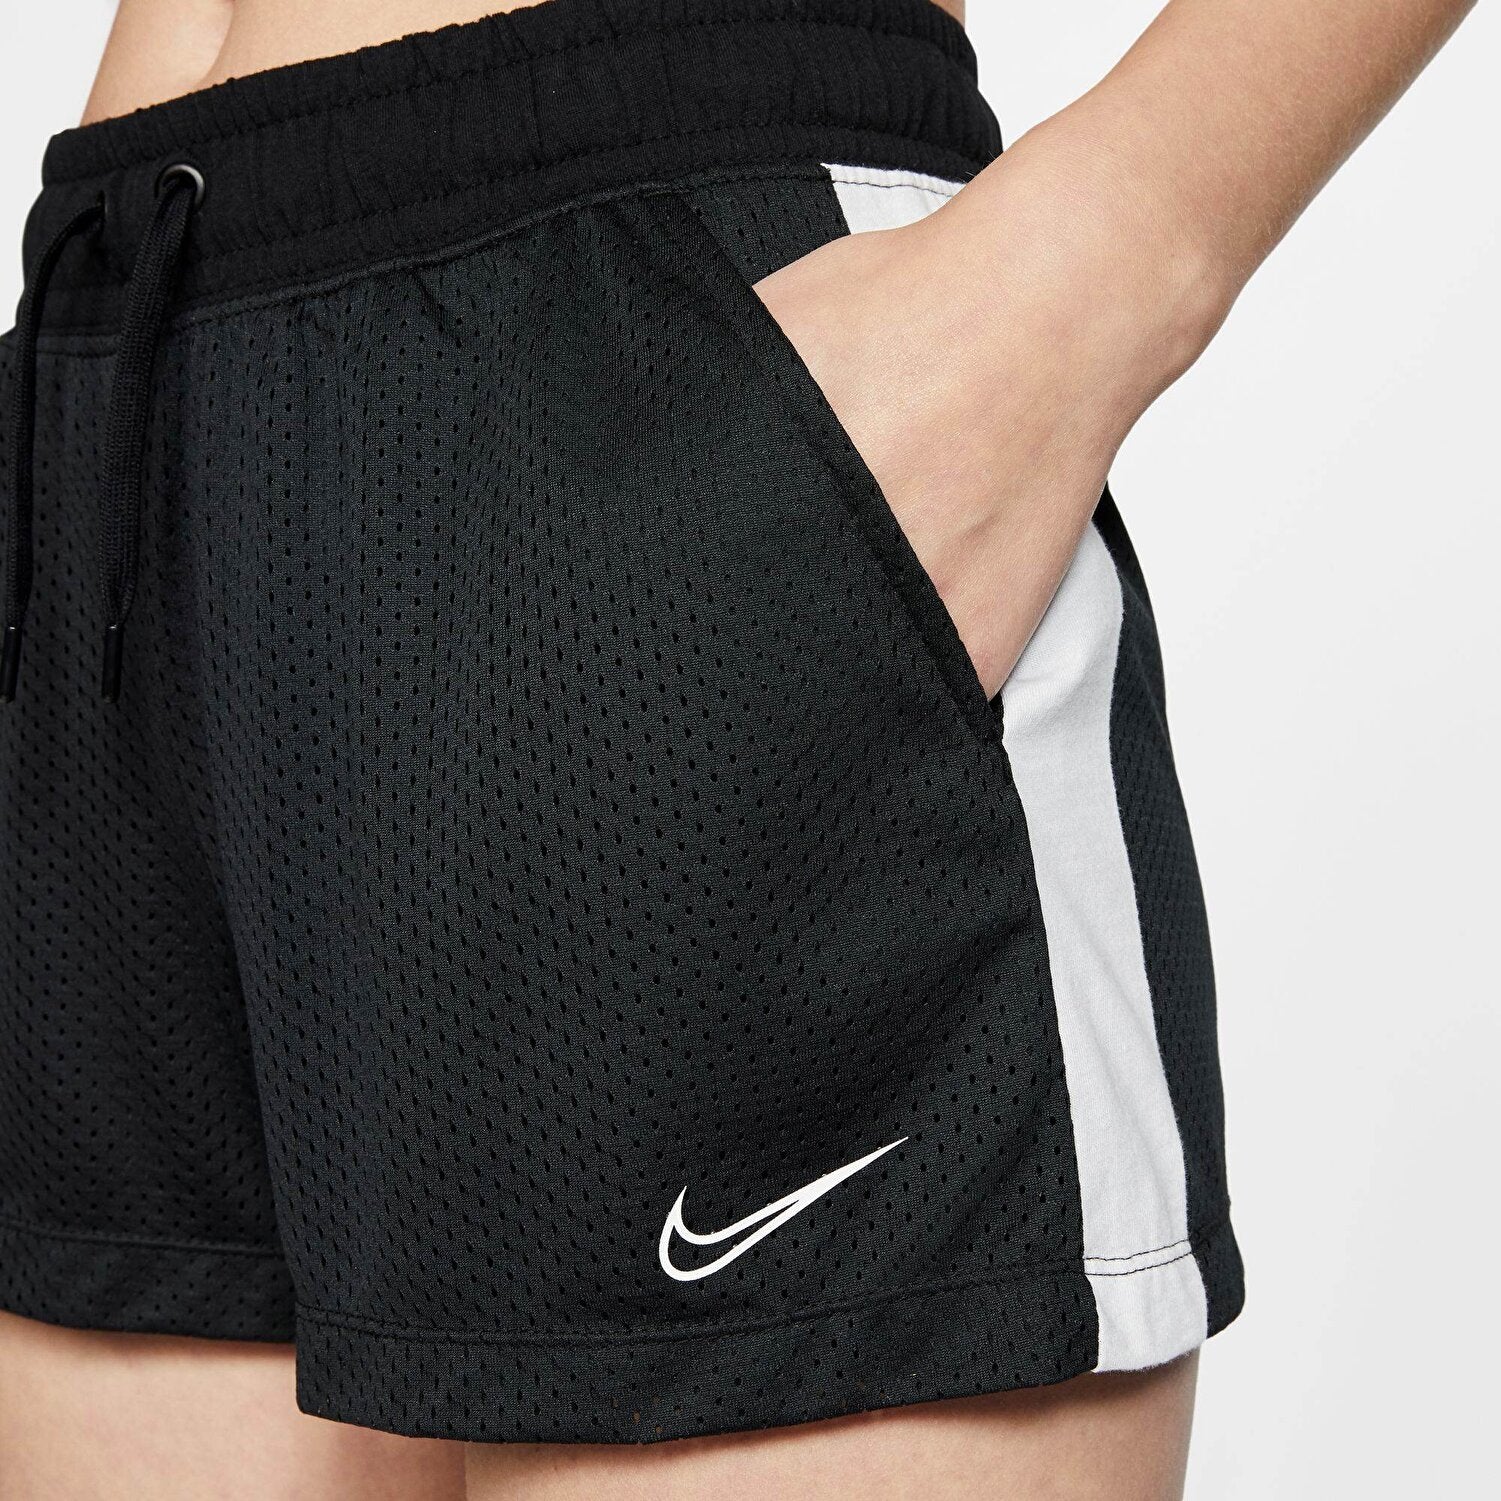 Nike short women